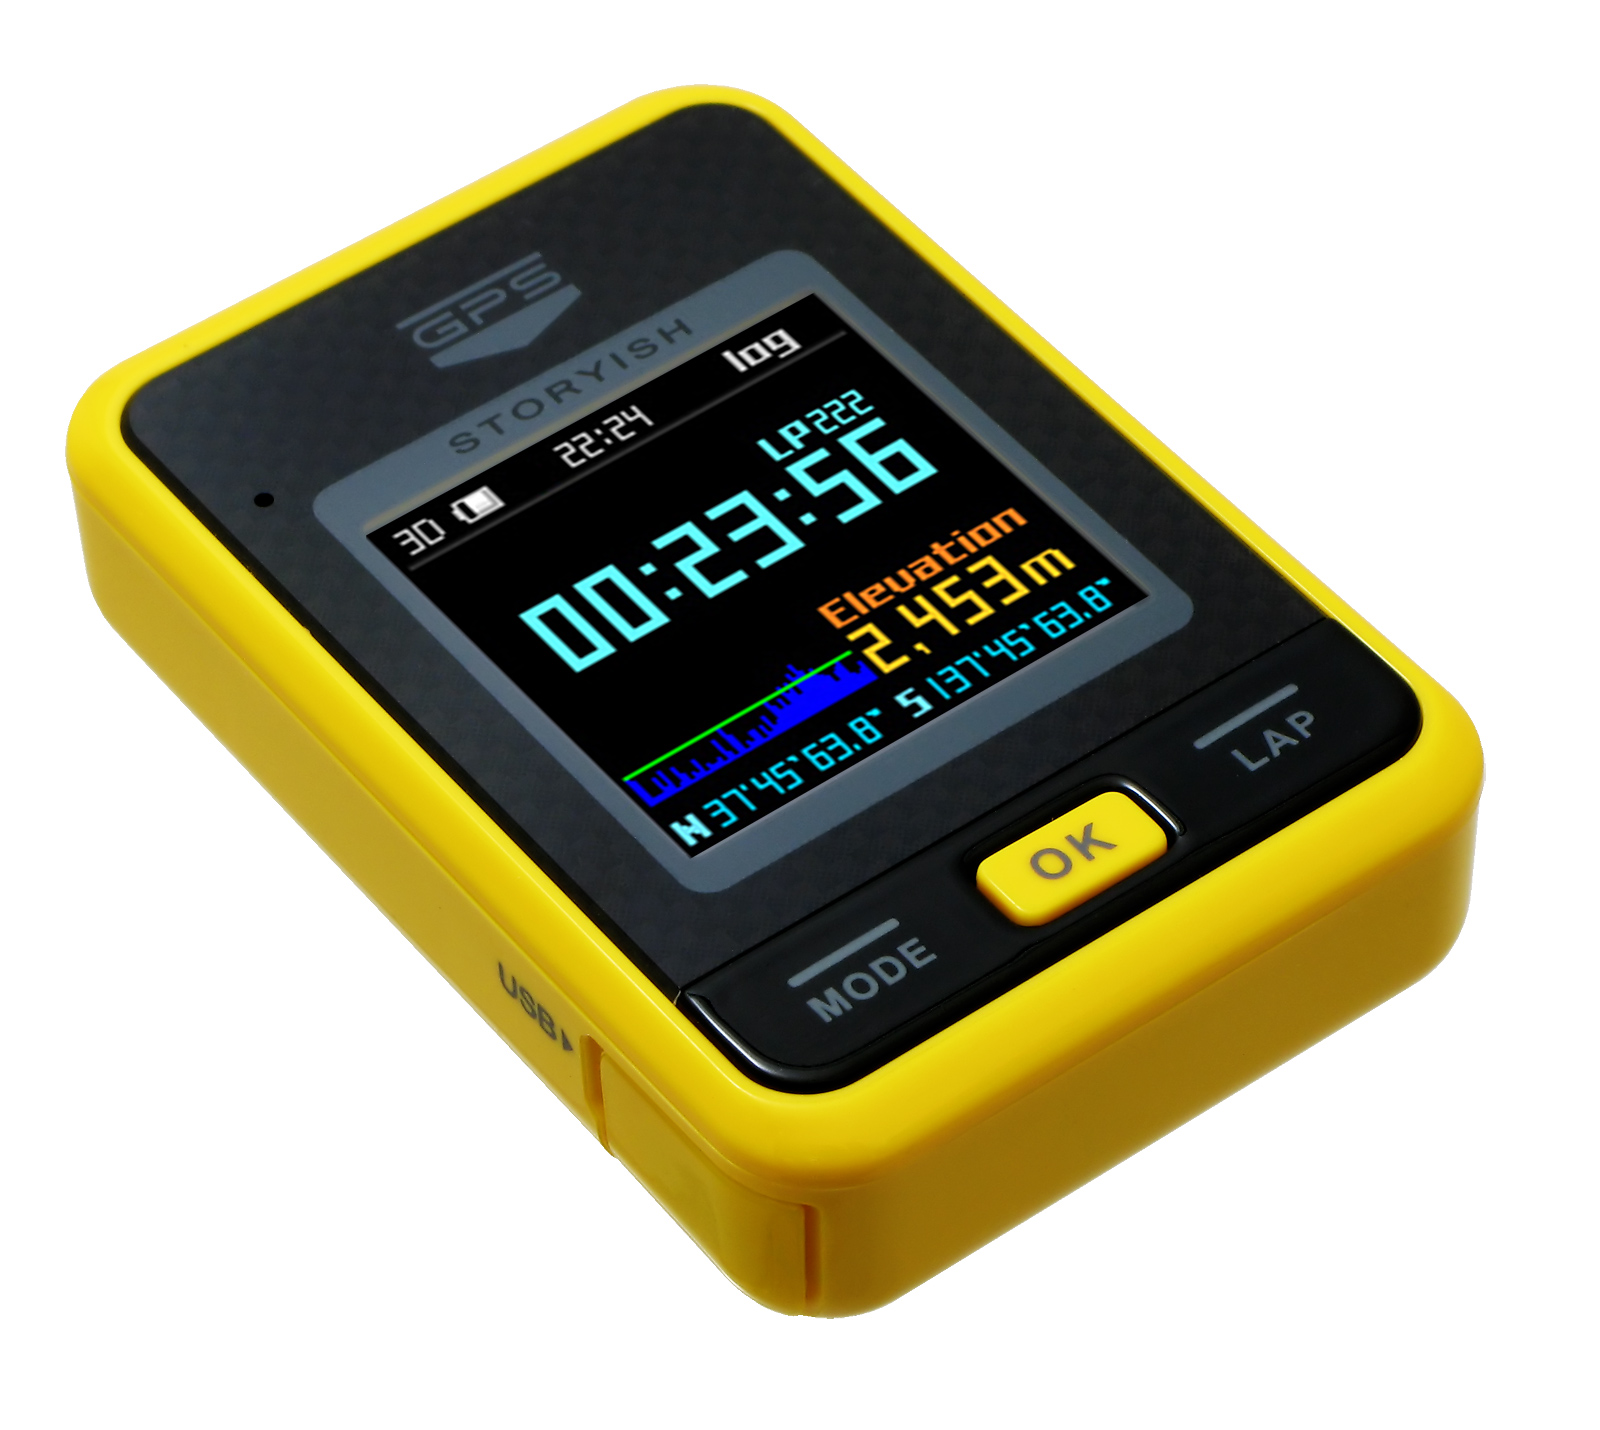 ハンファ 小型GPSユニット「Pocket GPS S1」発売